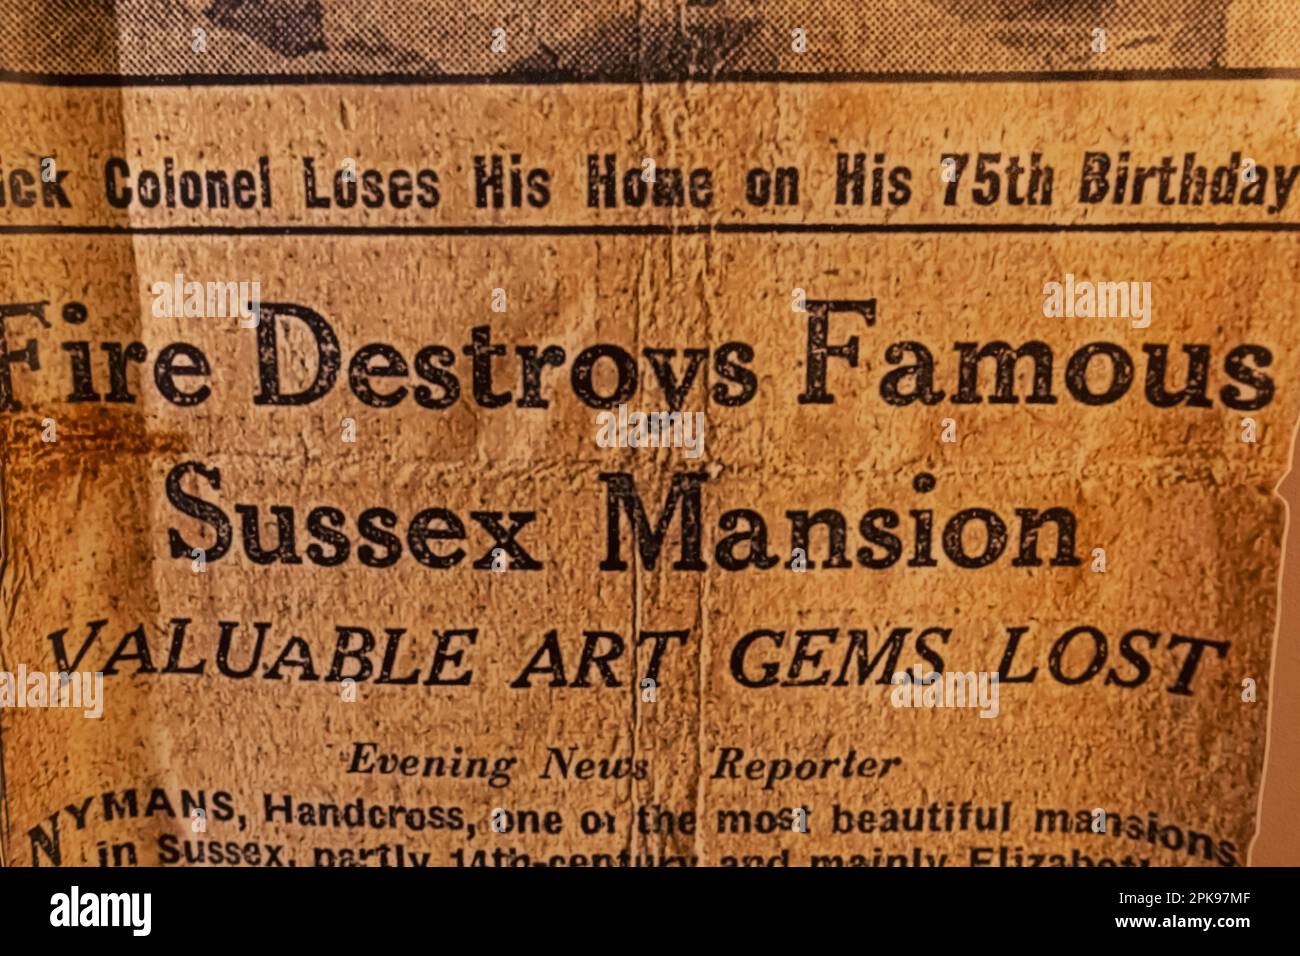 Angleterre, West Sussex, Handcross, Nymans, House and Gardens, Journal du soir manchettes décrivant la destruction par le feu de Nymans en date de 1947 Banque D'Images